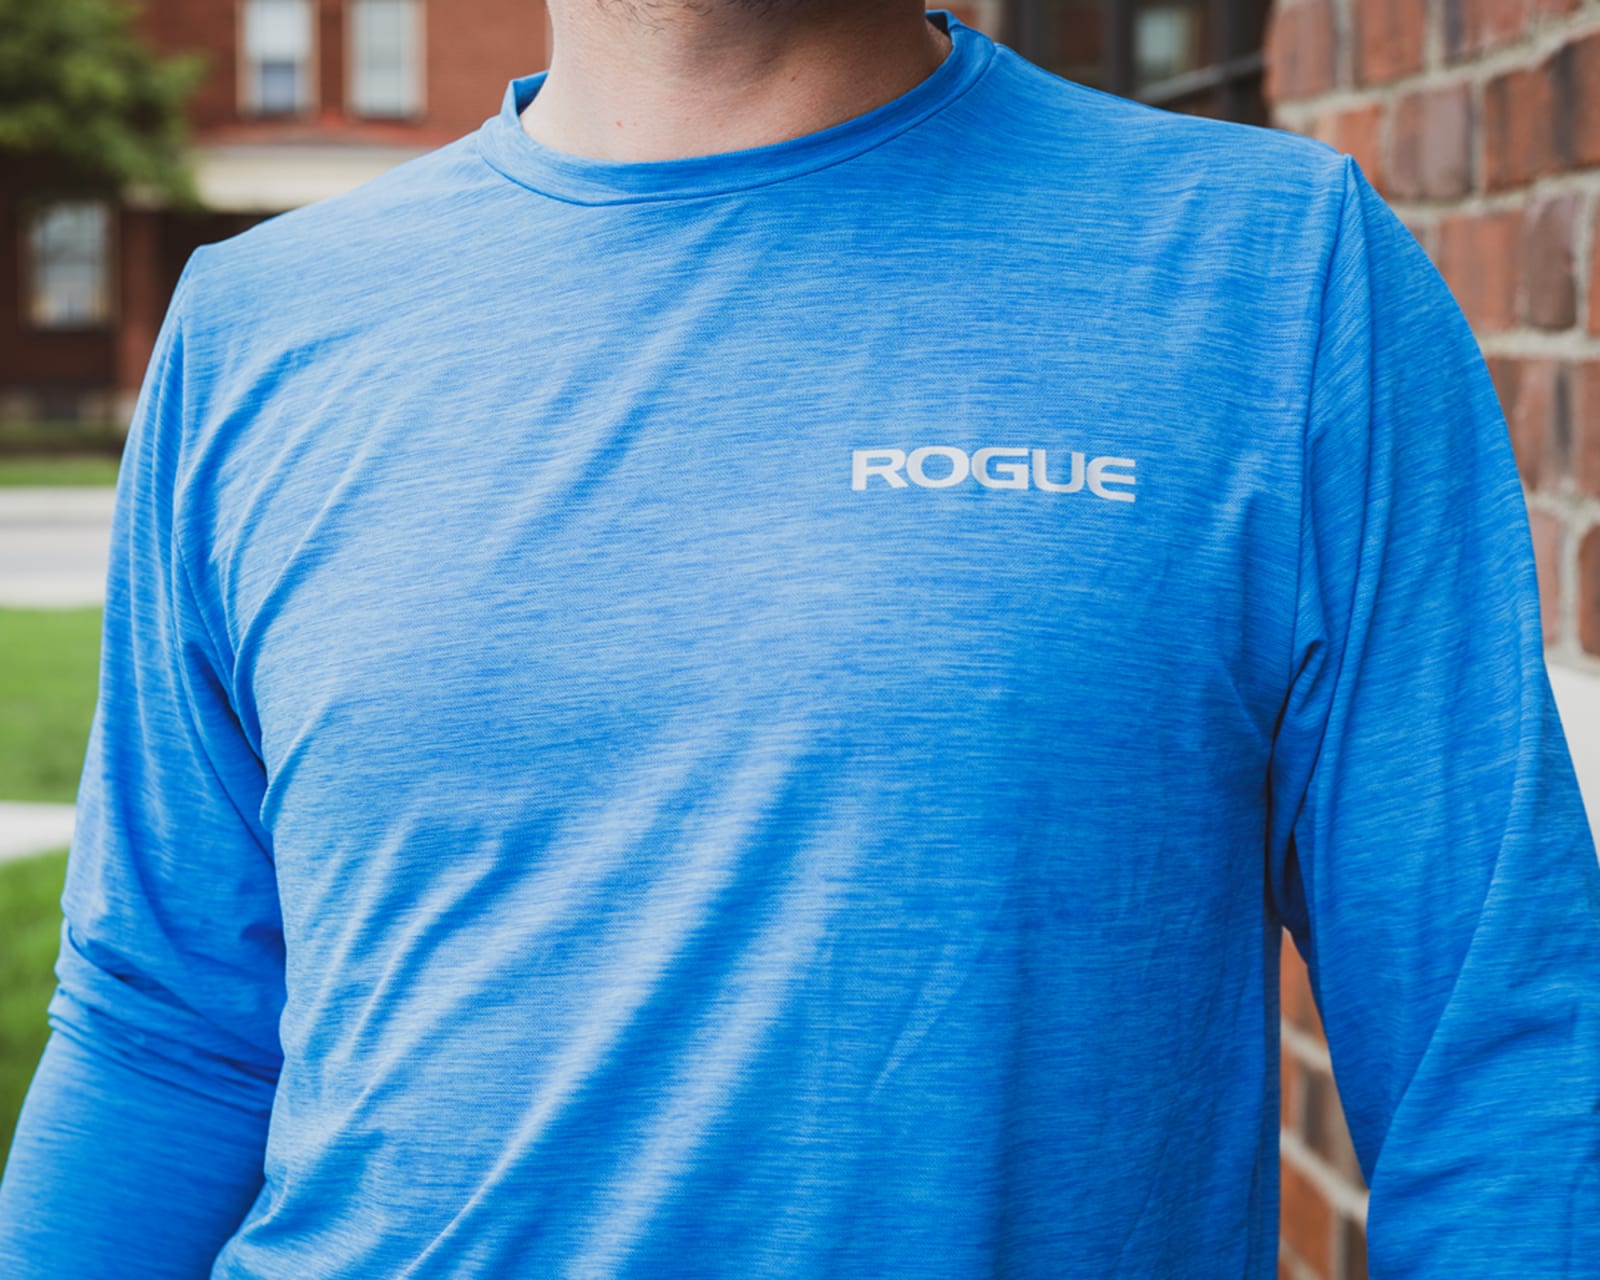 Rogue Men's Performance Longsleeve Sun Shirt - Blue